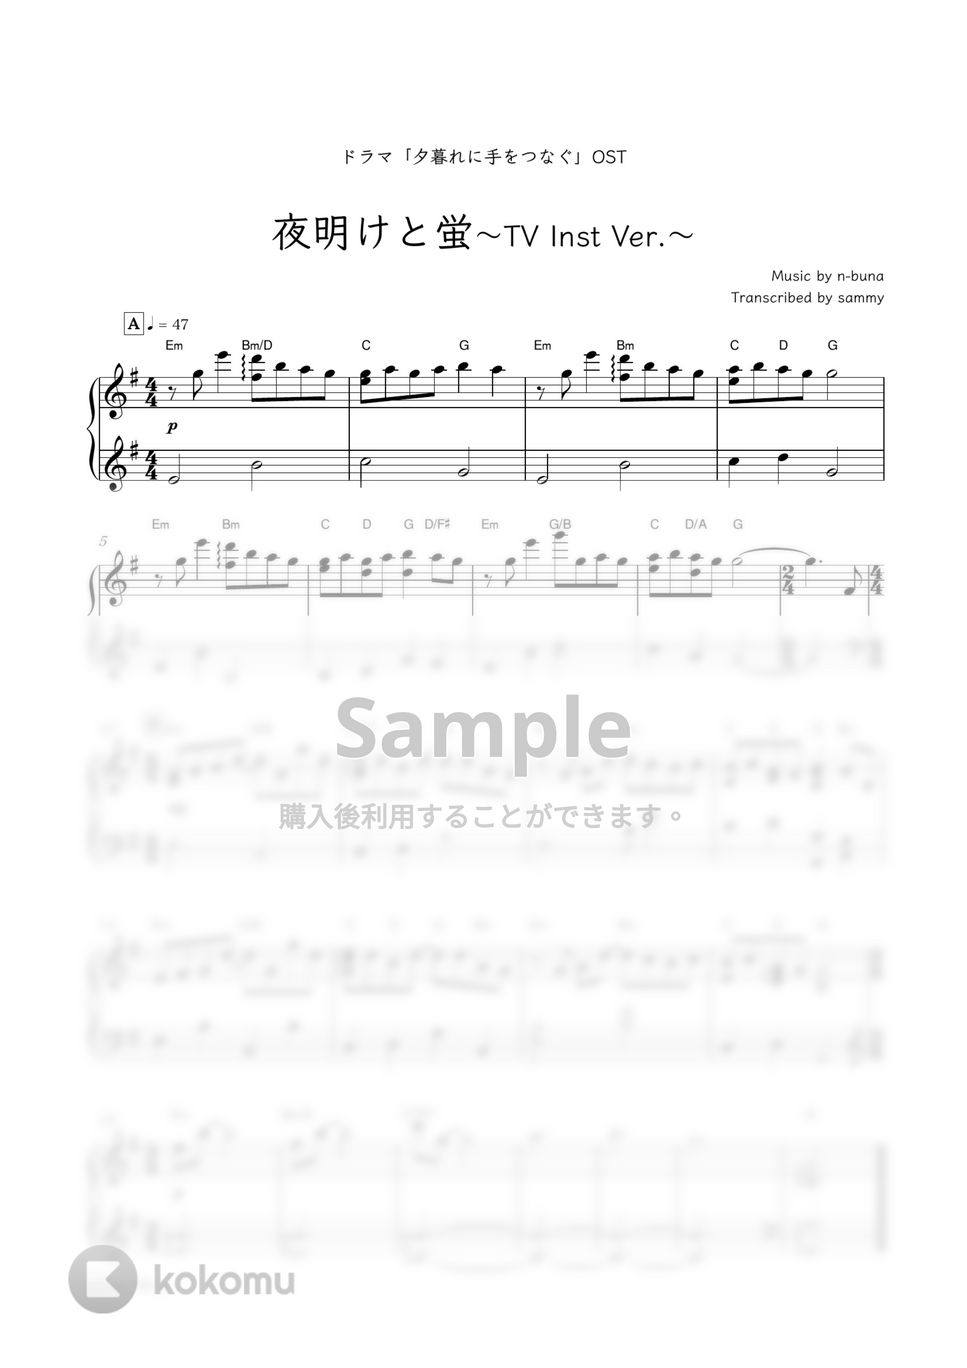 n-buna・ドラマ『夕暮れに、手をつなぐ』OST - 夜明けと蛍 (ドラマで流れたピアノver.) by sammy